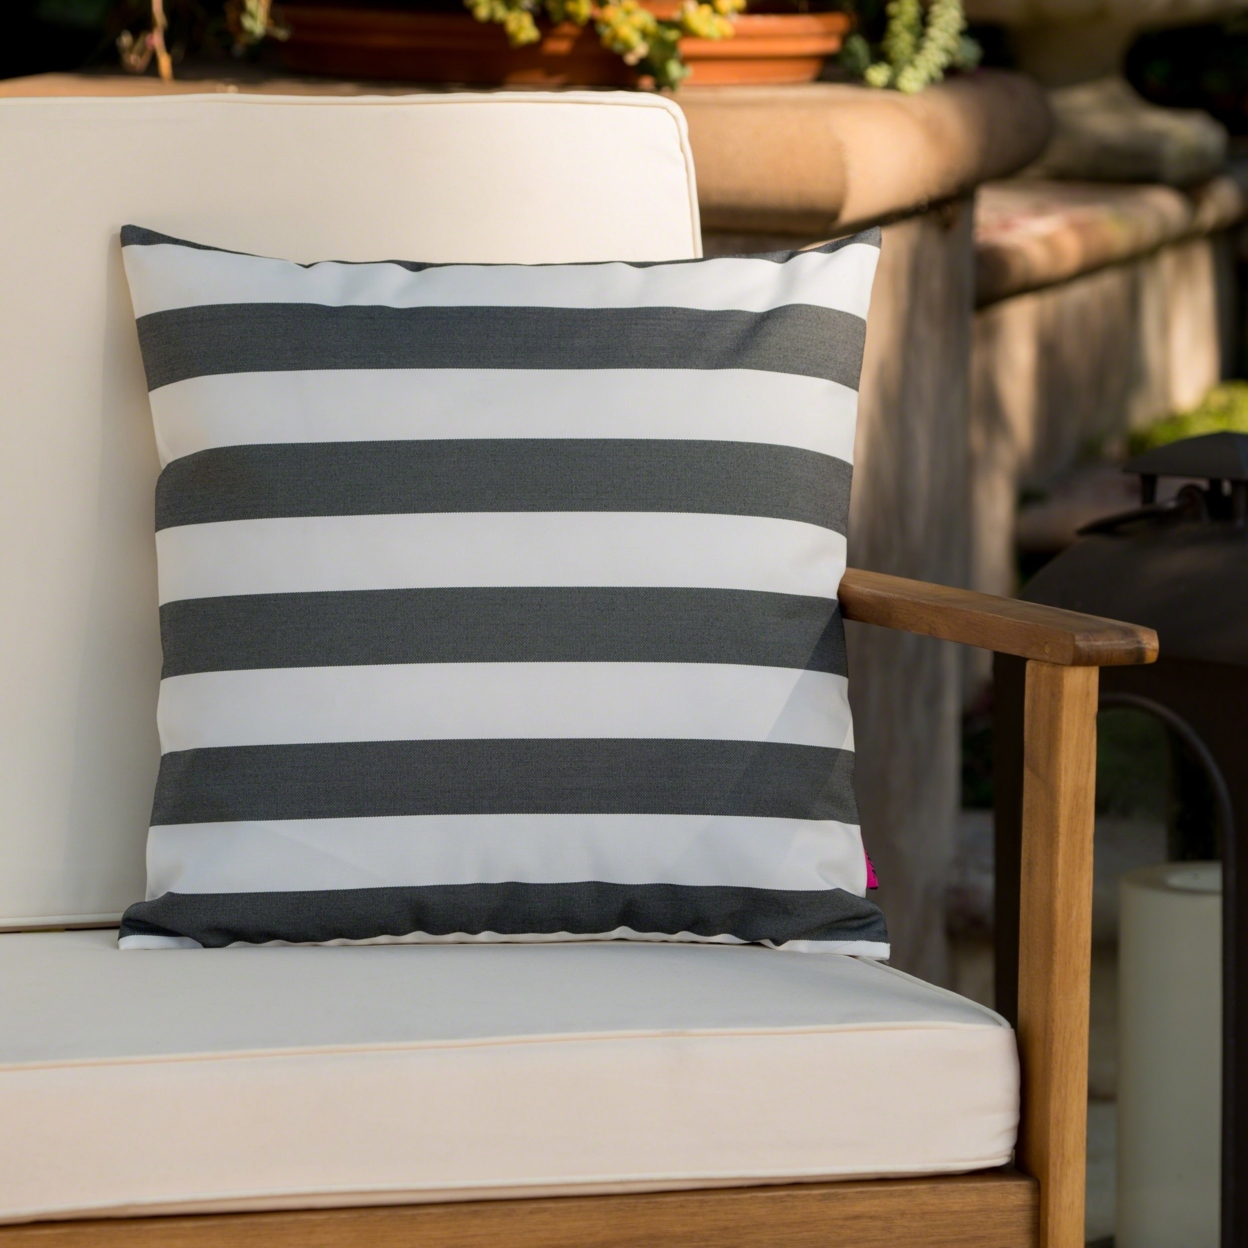 Coronado Outdoor Stripe Water Resistant Square Throw Pillow - Green/white, Single